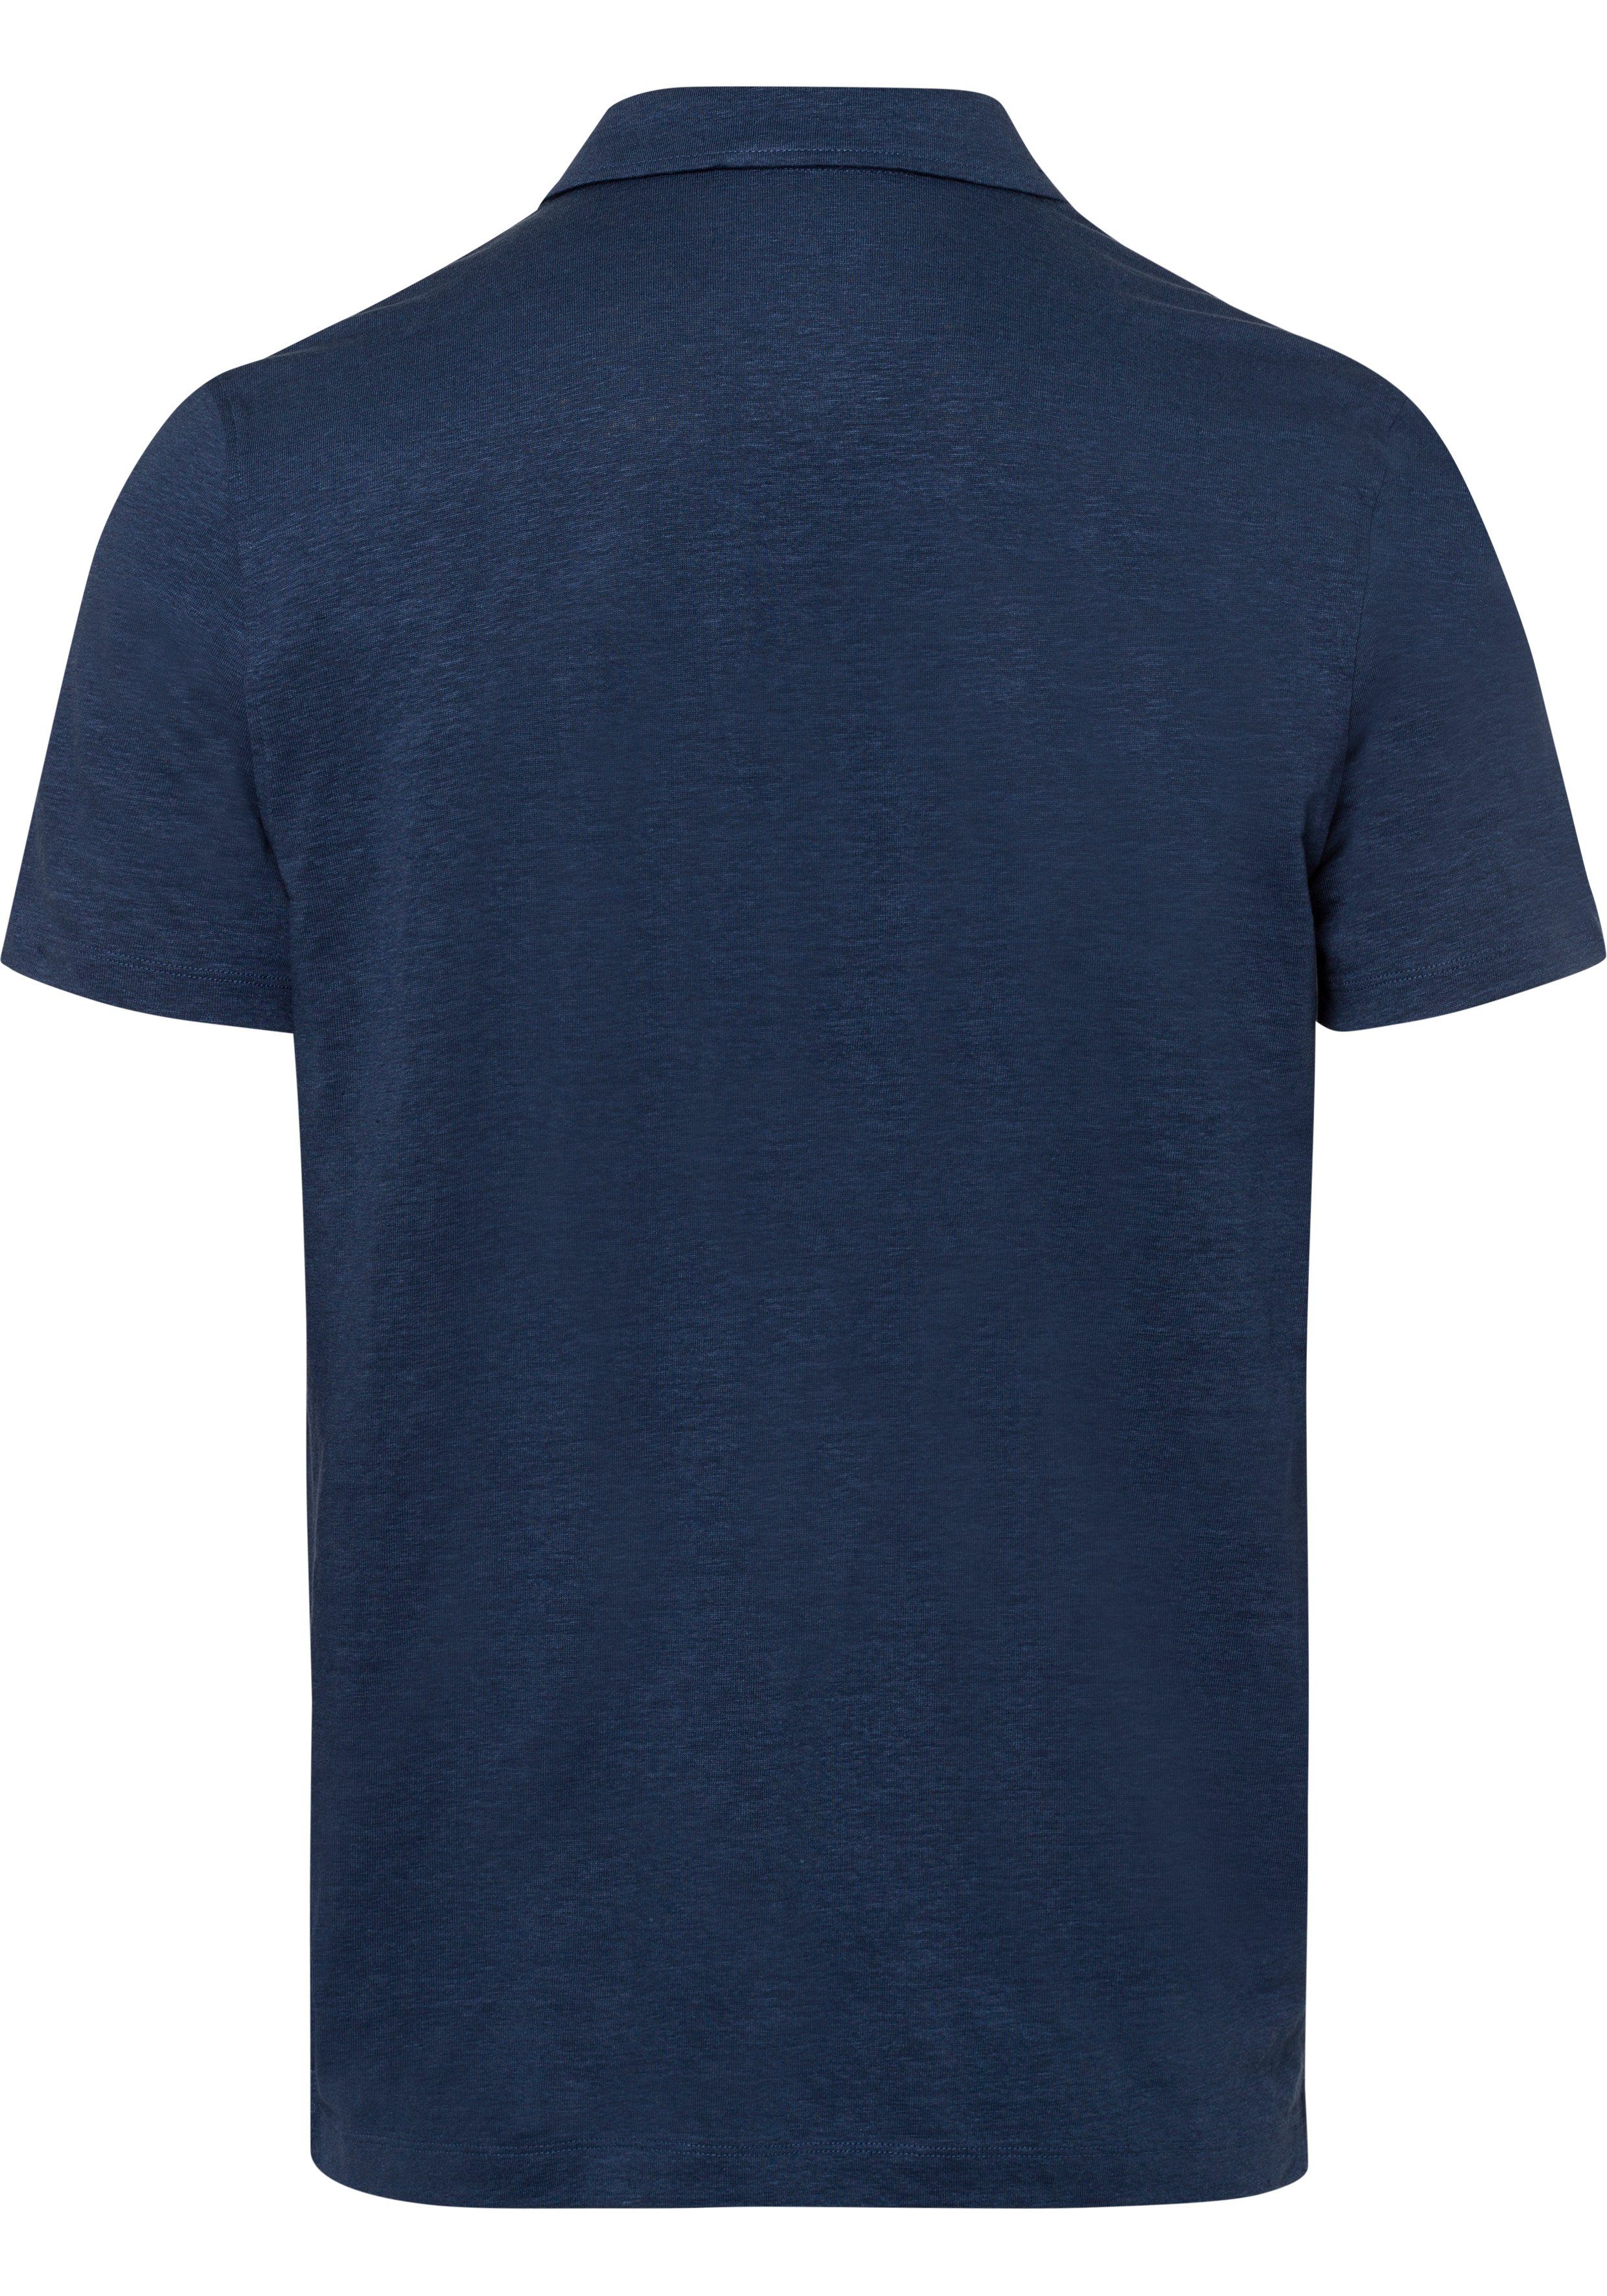 mit in rauchblau Casual-Optik im Leinen sommerlicher Hemden-Look OLYMP Poloshirt